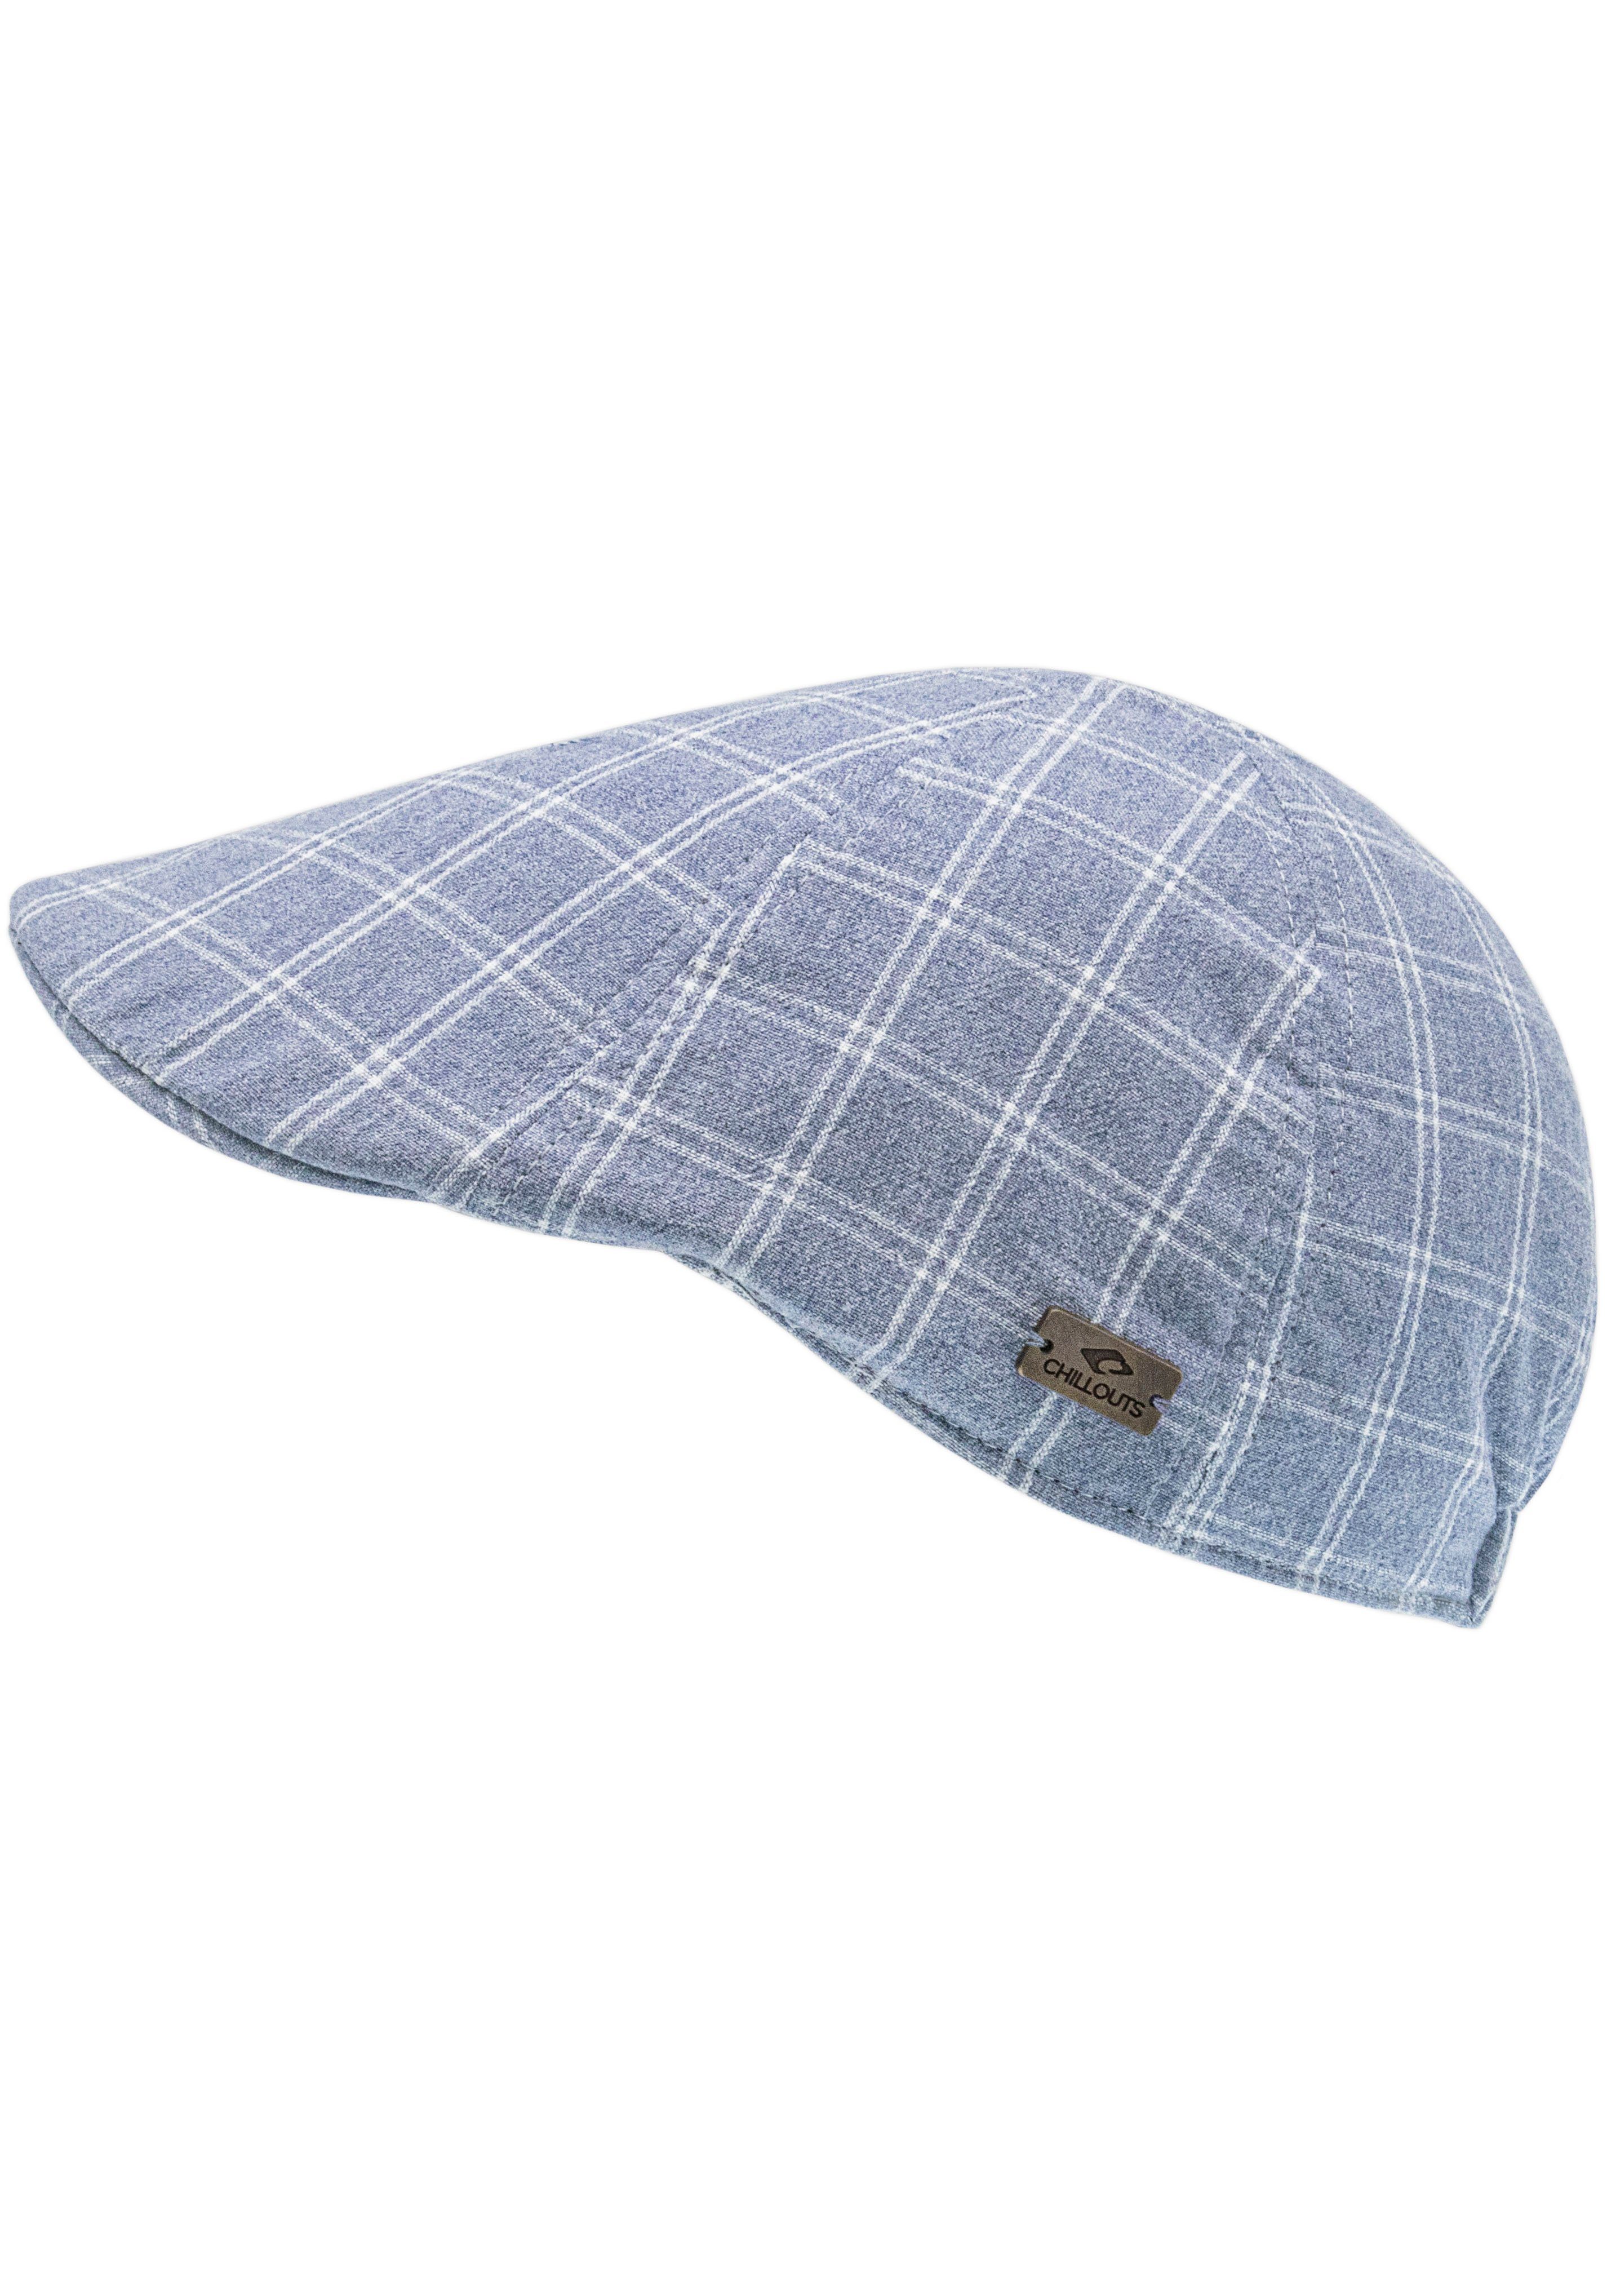 chillouts Schiebermütze Flat Cap, kariert, Cork Hat mit Gummizug jeansblau | Schiebermützen